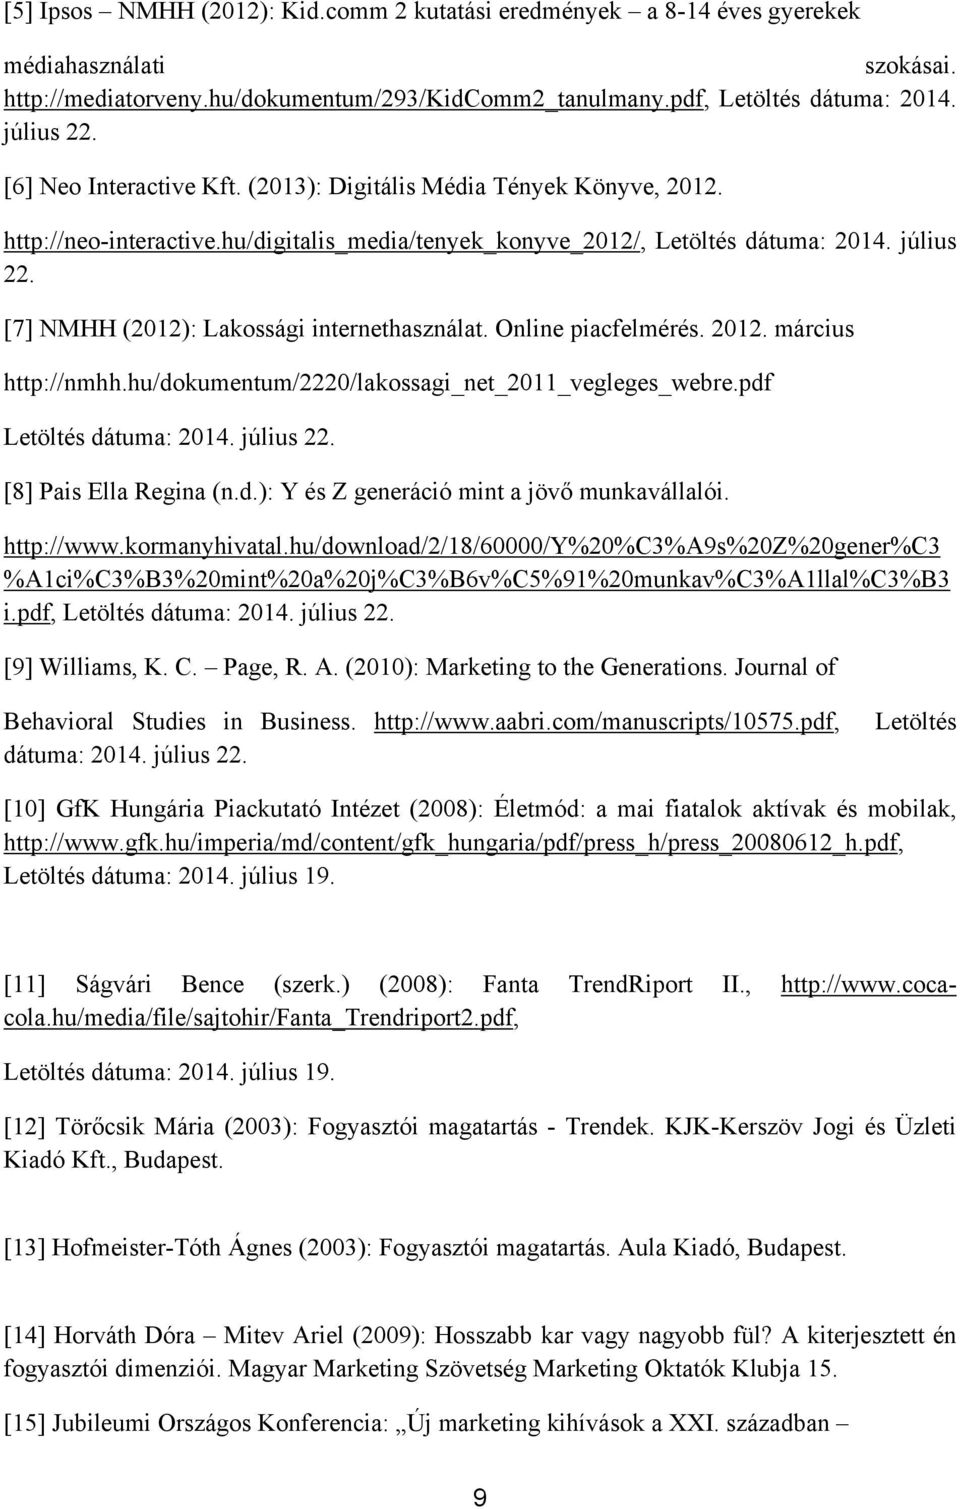 [7] NMHH (2012): Lakossági internethasználat. Online piacfelmérés. 2012. március http://nmhh.hu/dokumentum/2220/lakossagi_net_2011_vegleges_webre.pdf Letöltés dátuma: 2014. július 22.